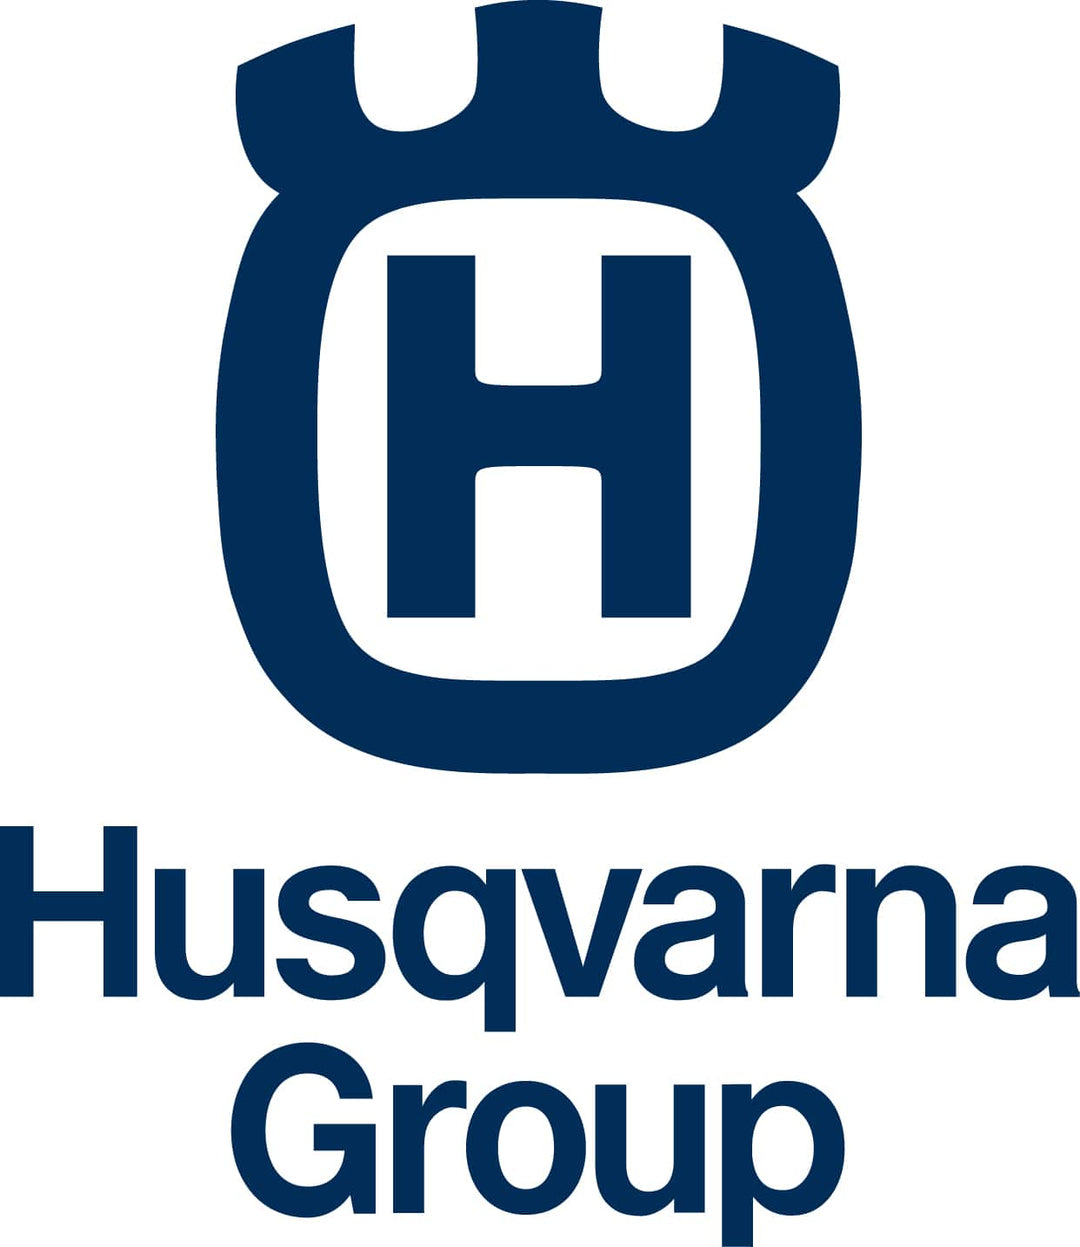 GENUINE OEM TECHNICAL FORESTRY HELMET 588 64 60-01 FOR HUSQVARNA